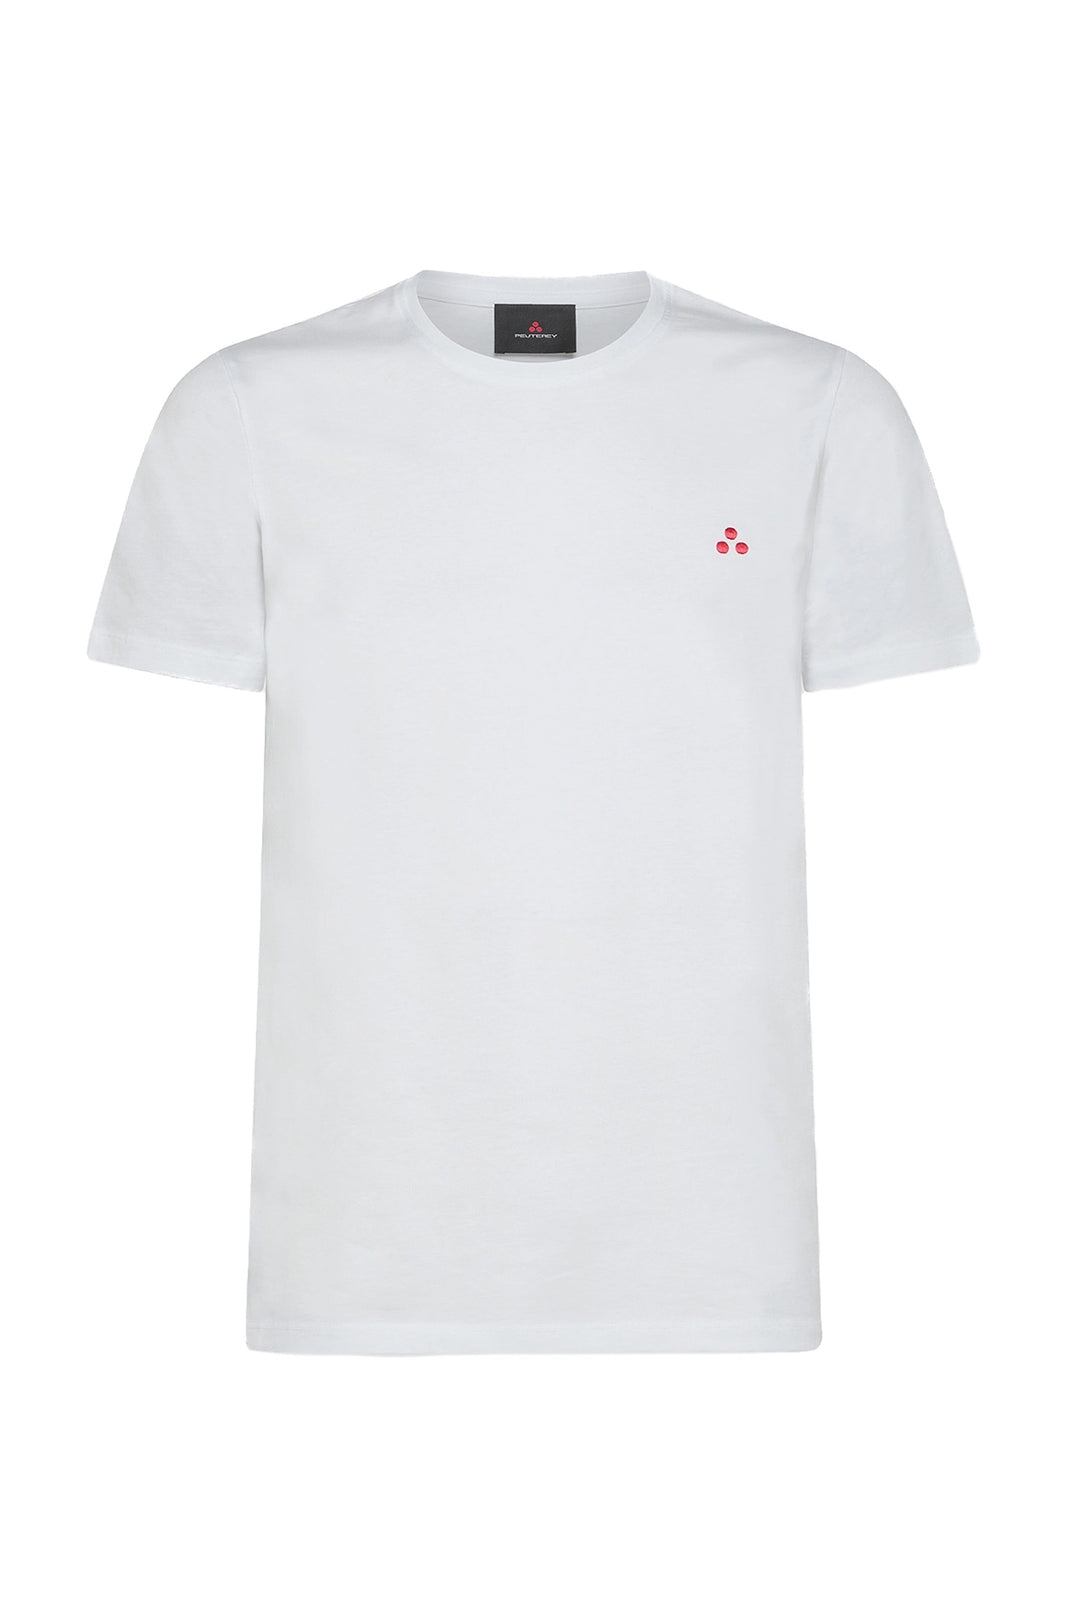 PEUTEREY T-shirt bianca in cotone con logo ricamato sul petto - Mancinelli 1954